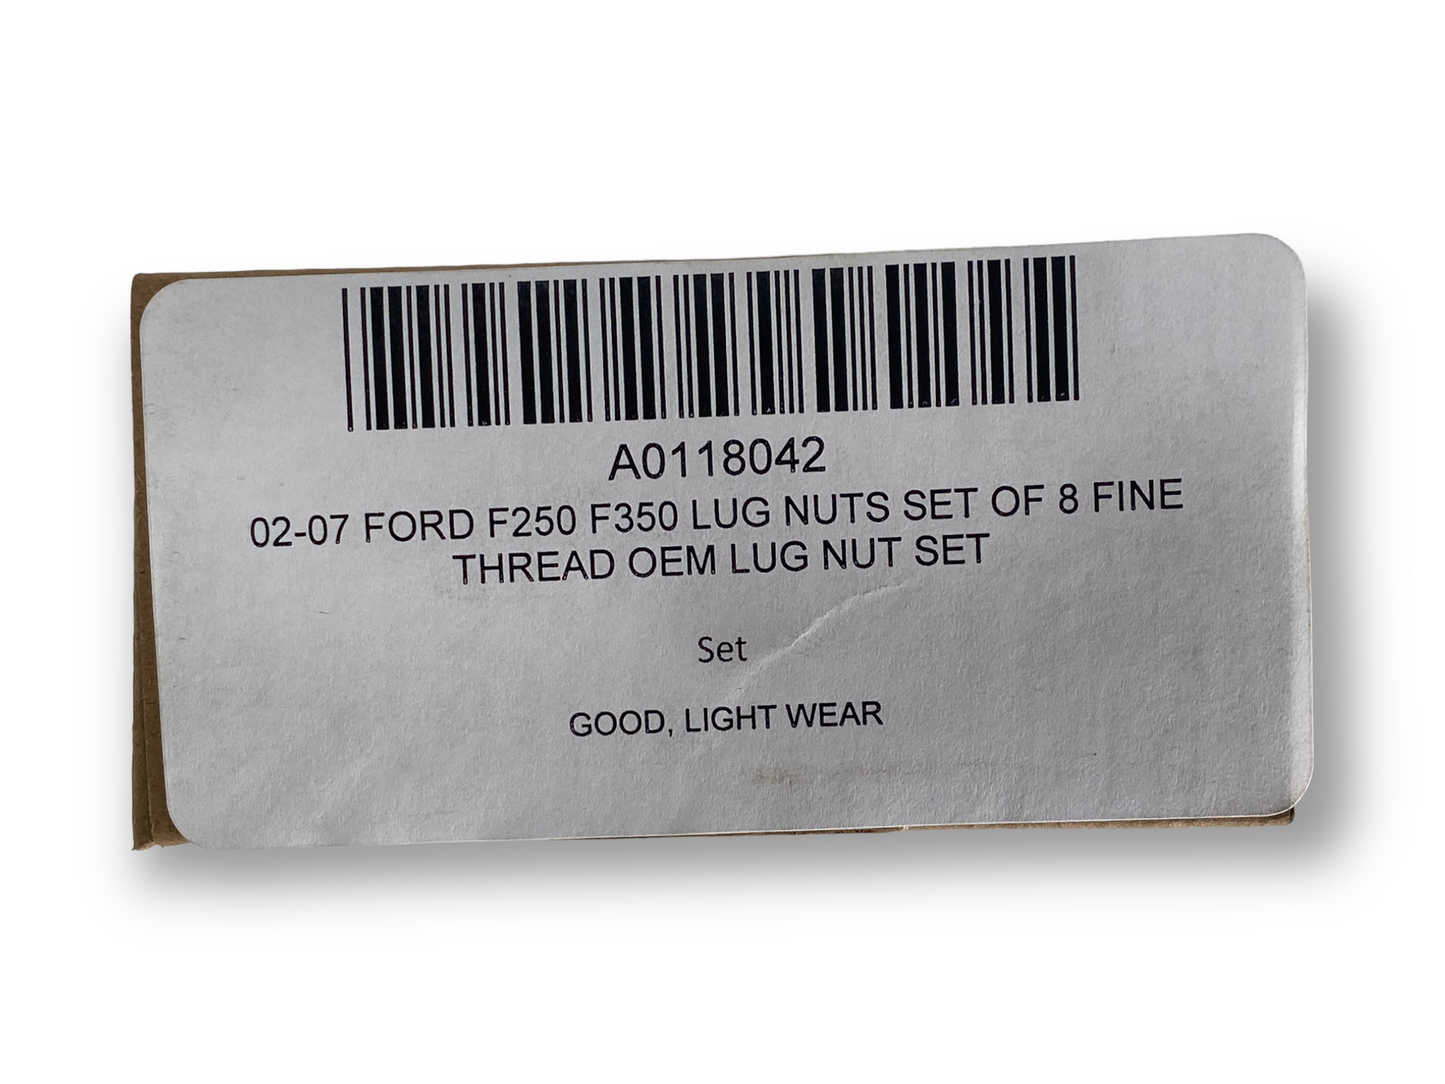 02-07 Ford F250 F350 Lug Nuts Set Of 8 Fine Thread OEM Lug Nut Set